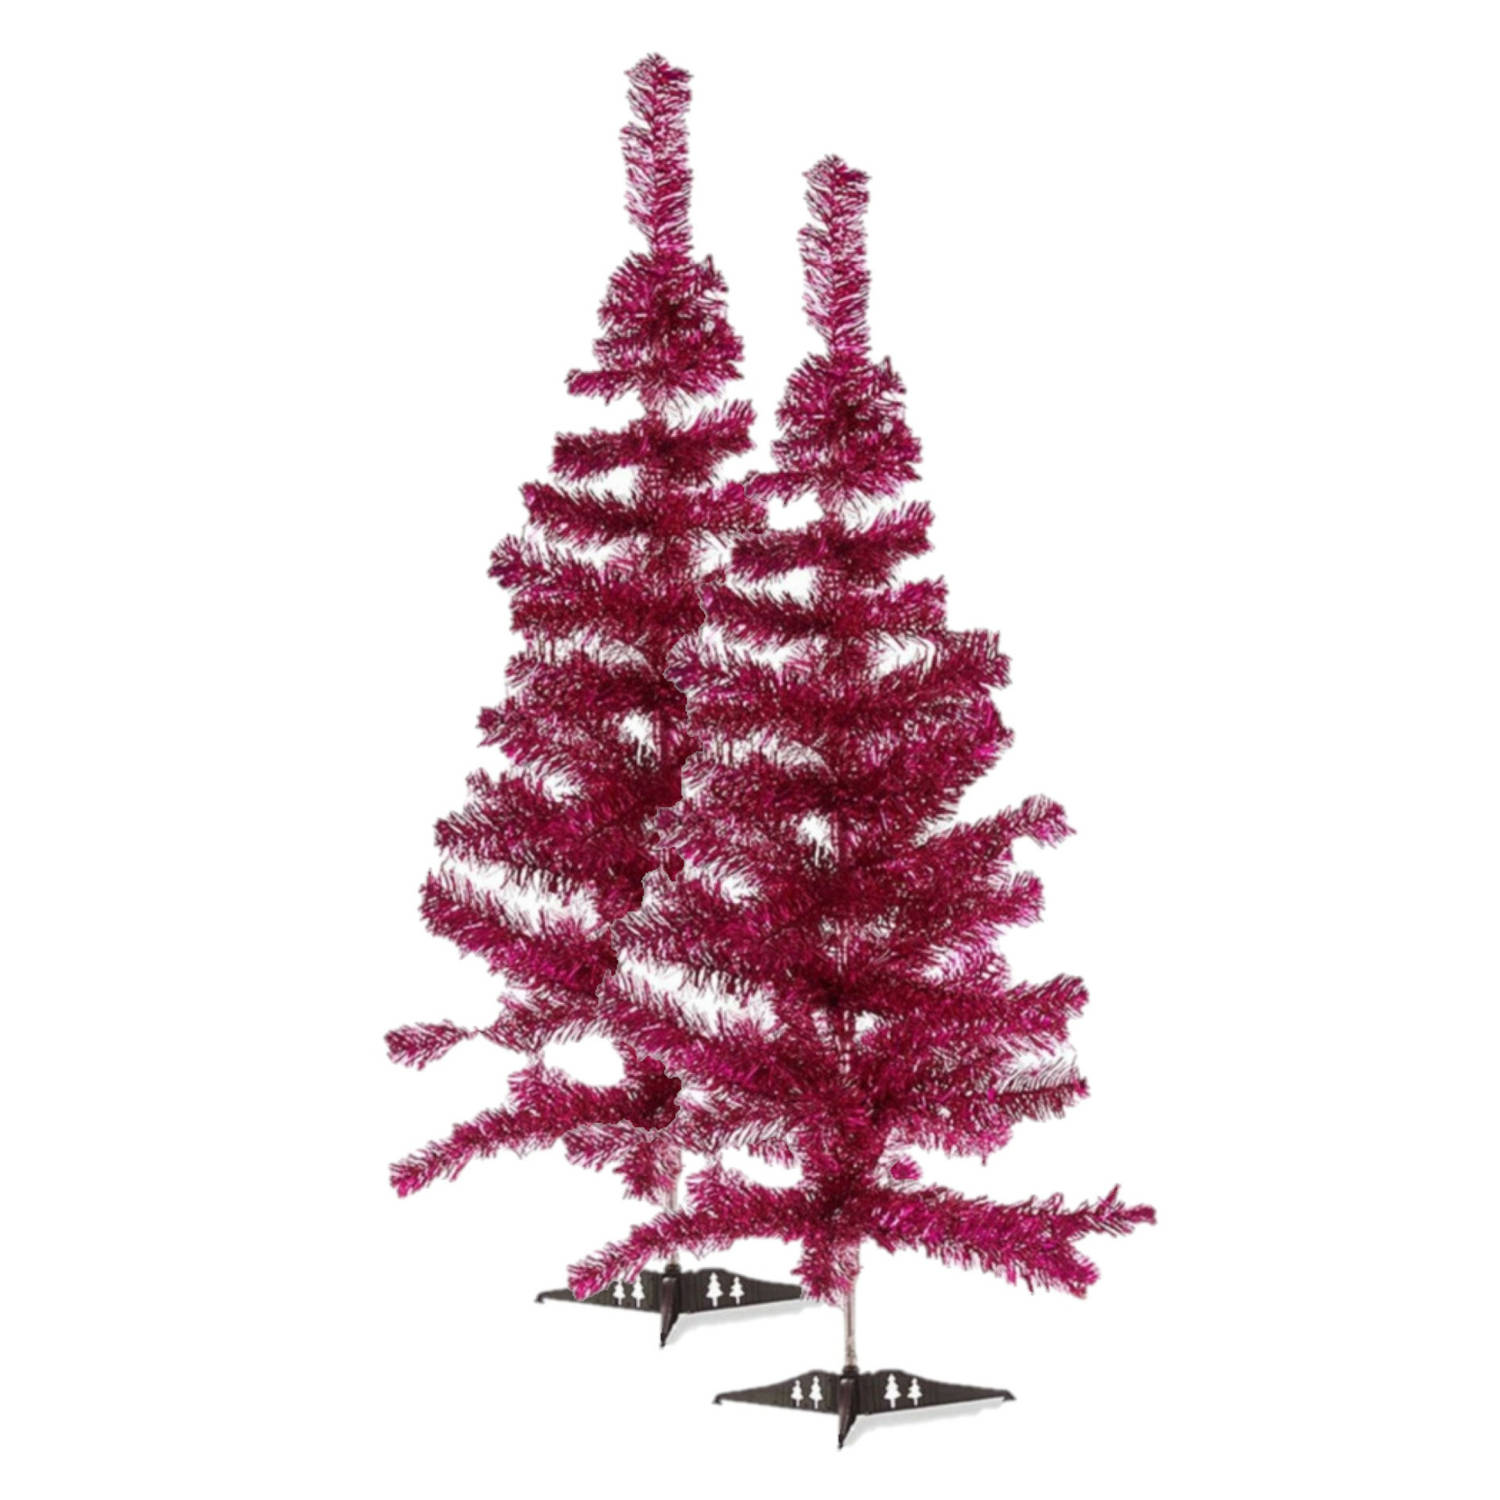 2x stuks kleine fuchsia roze kerstbomen van 90 cm - Kunstkerstboom